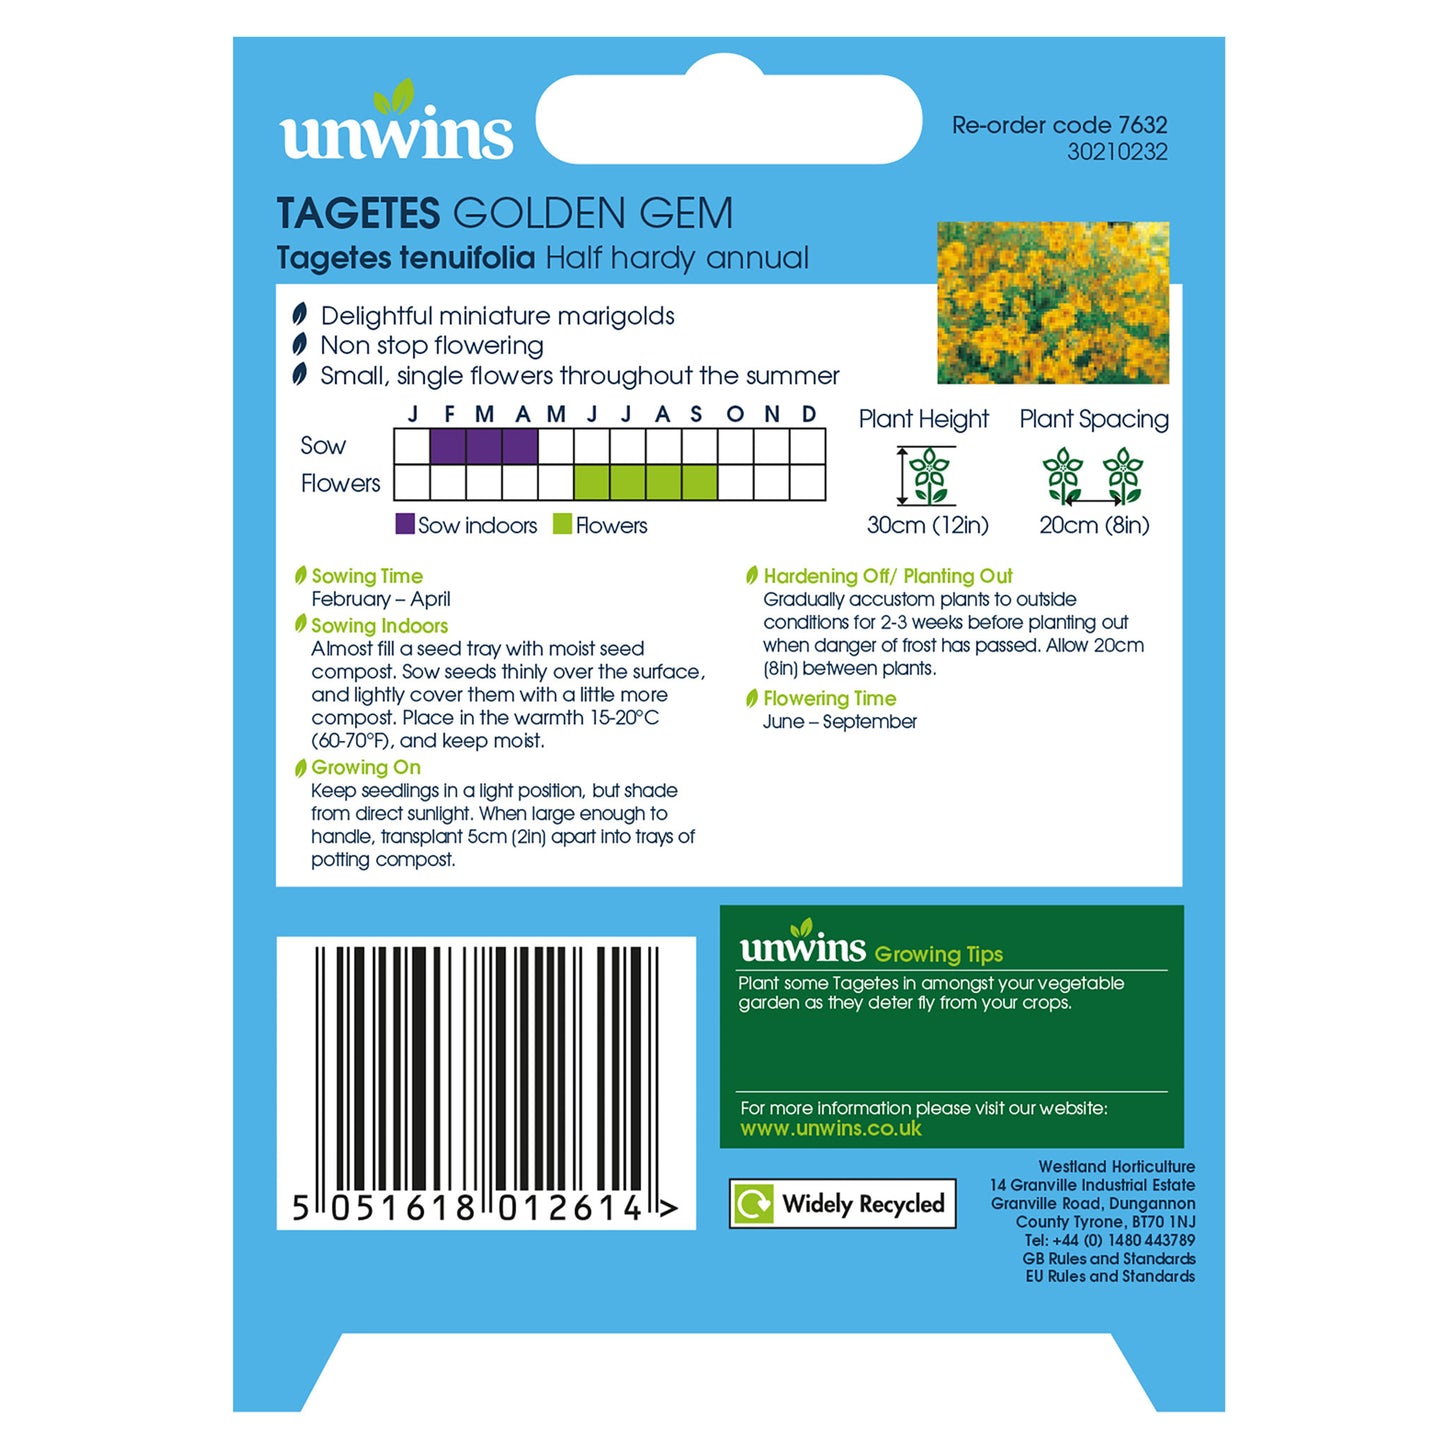 Unwins Tagetes Golden Gem Seeds - back